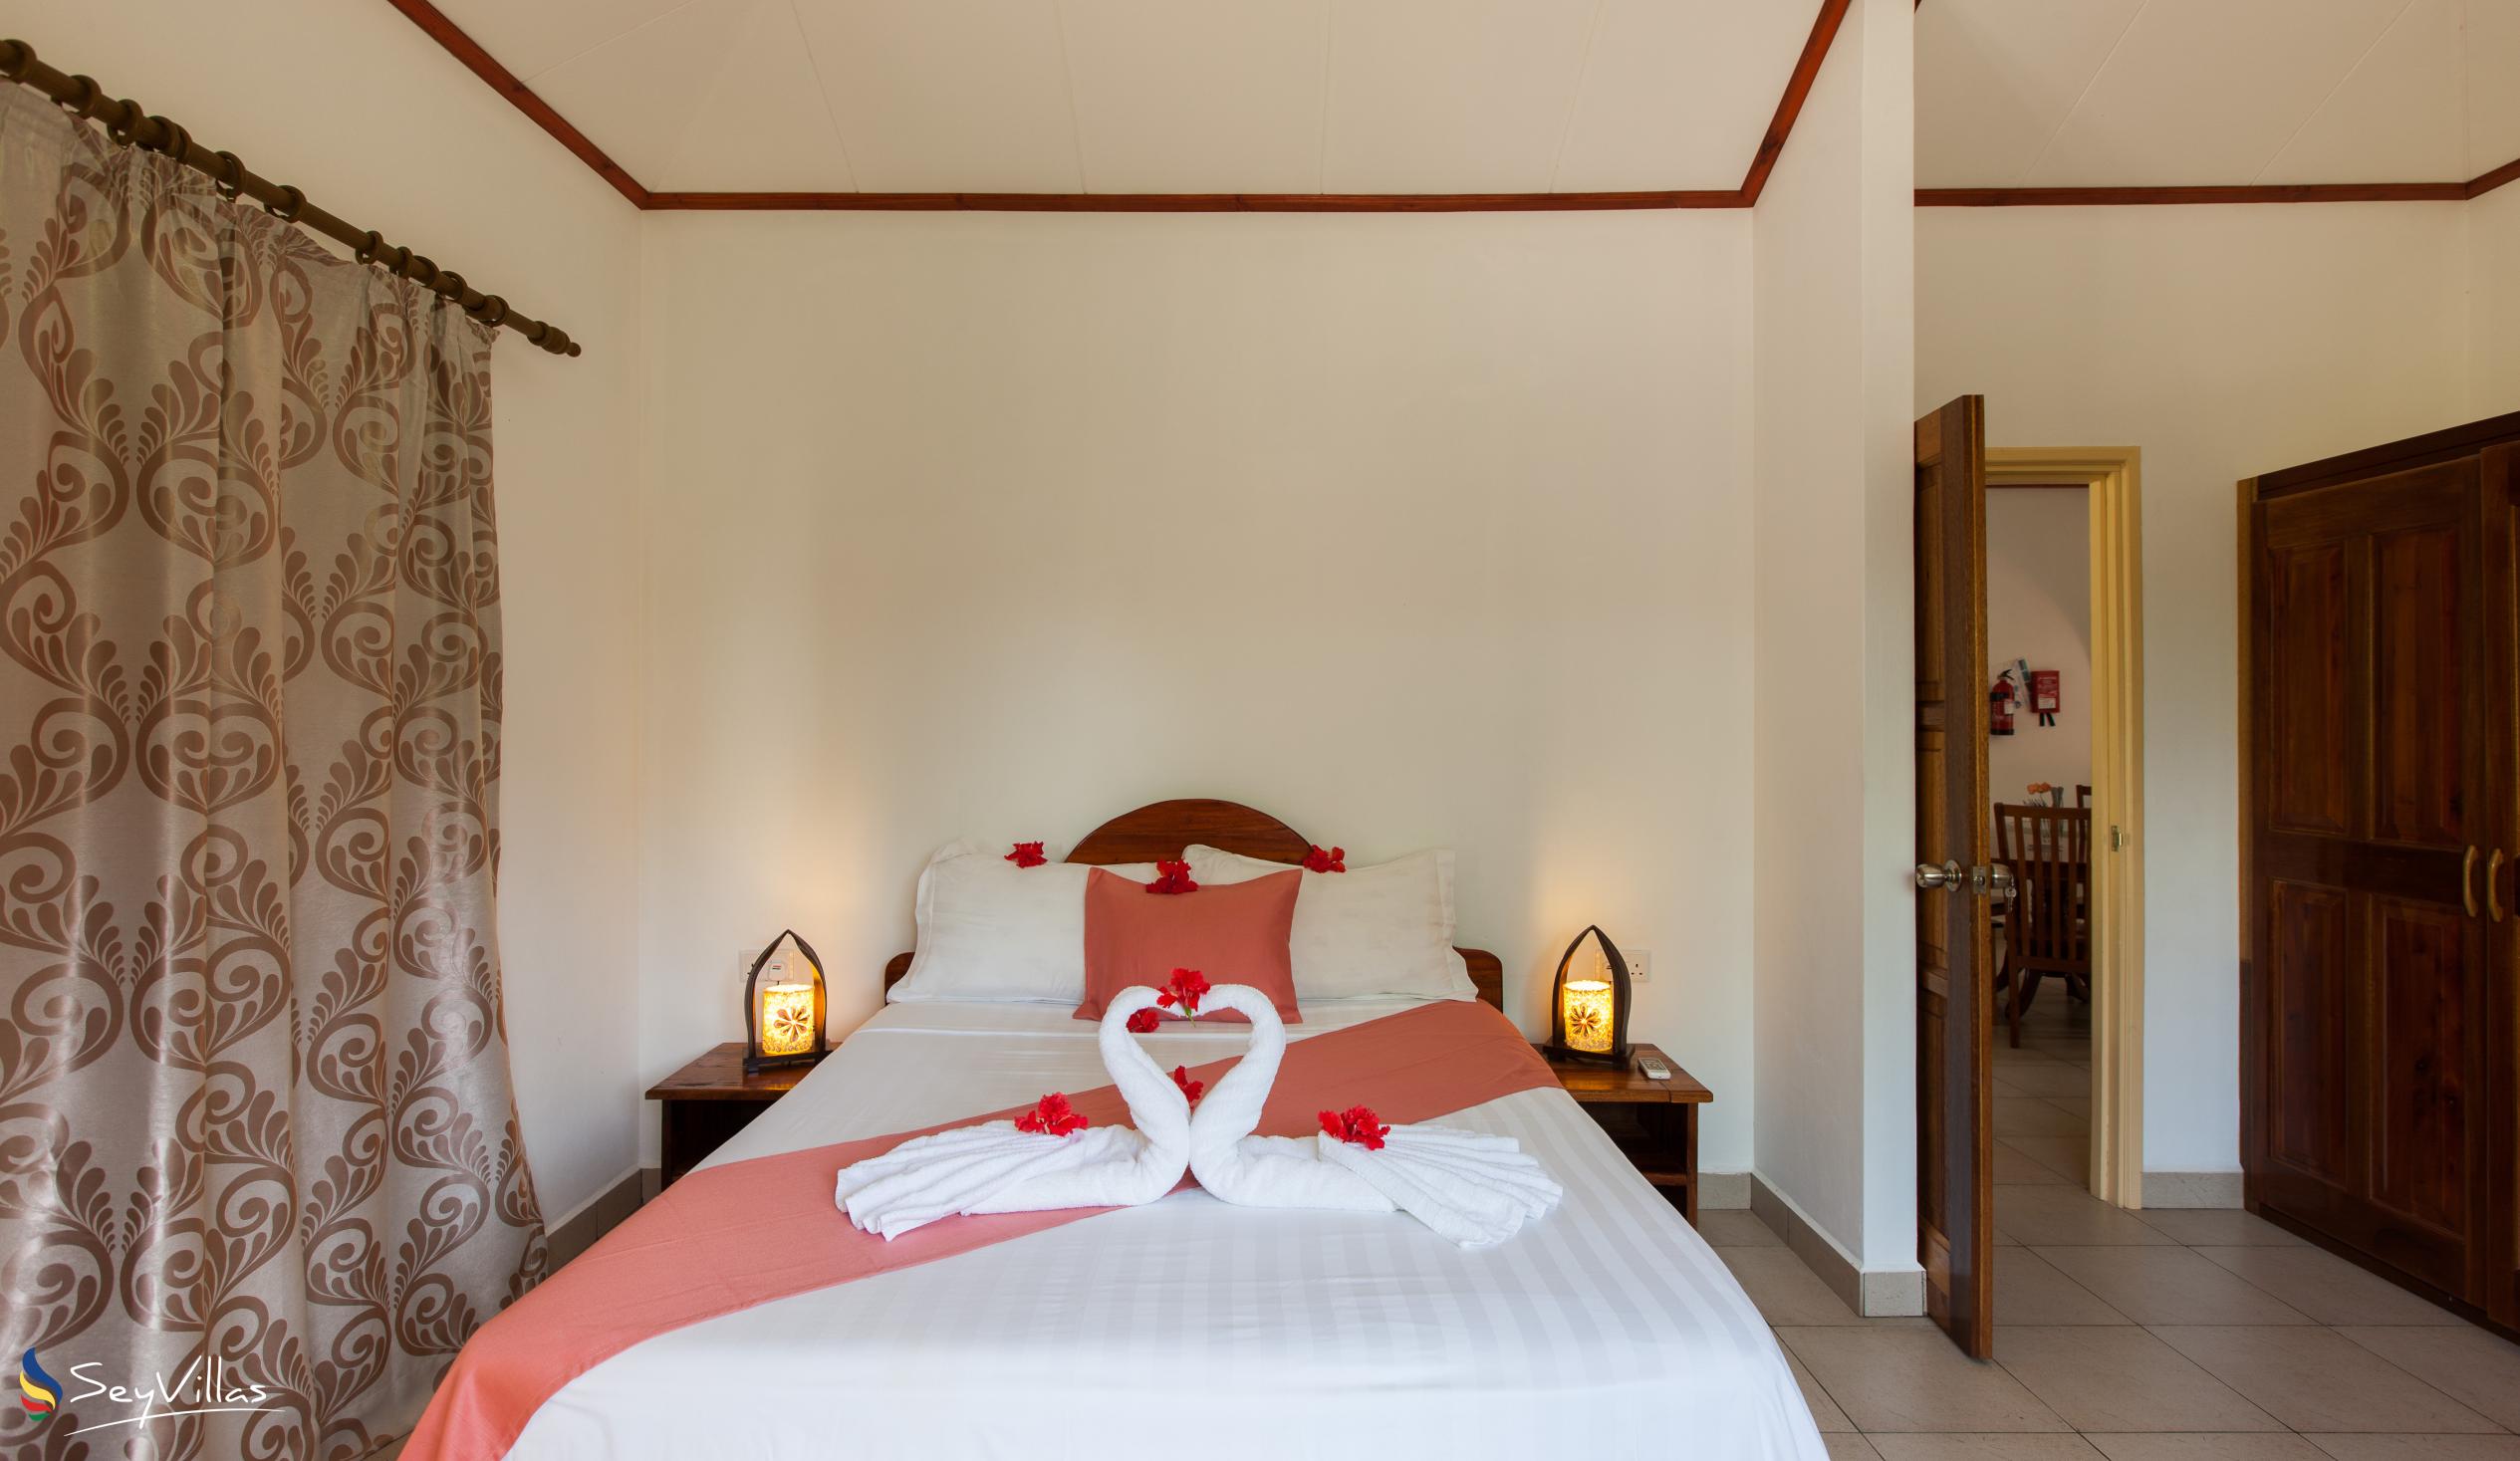 Foto 16: Hostellerie La Digue - Chalet 3 chambres - La Digue (Seychelles)